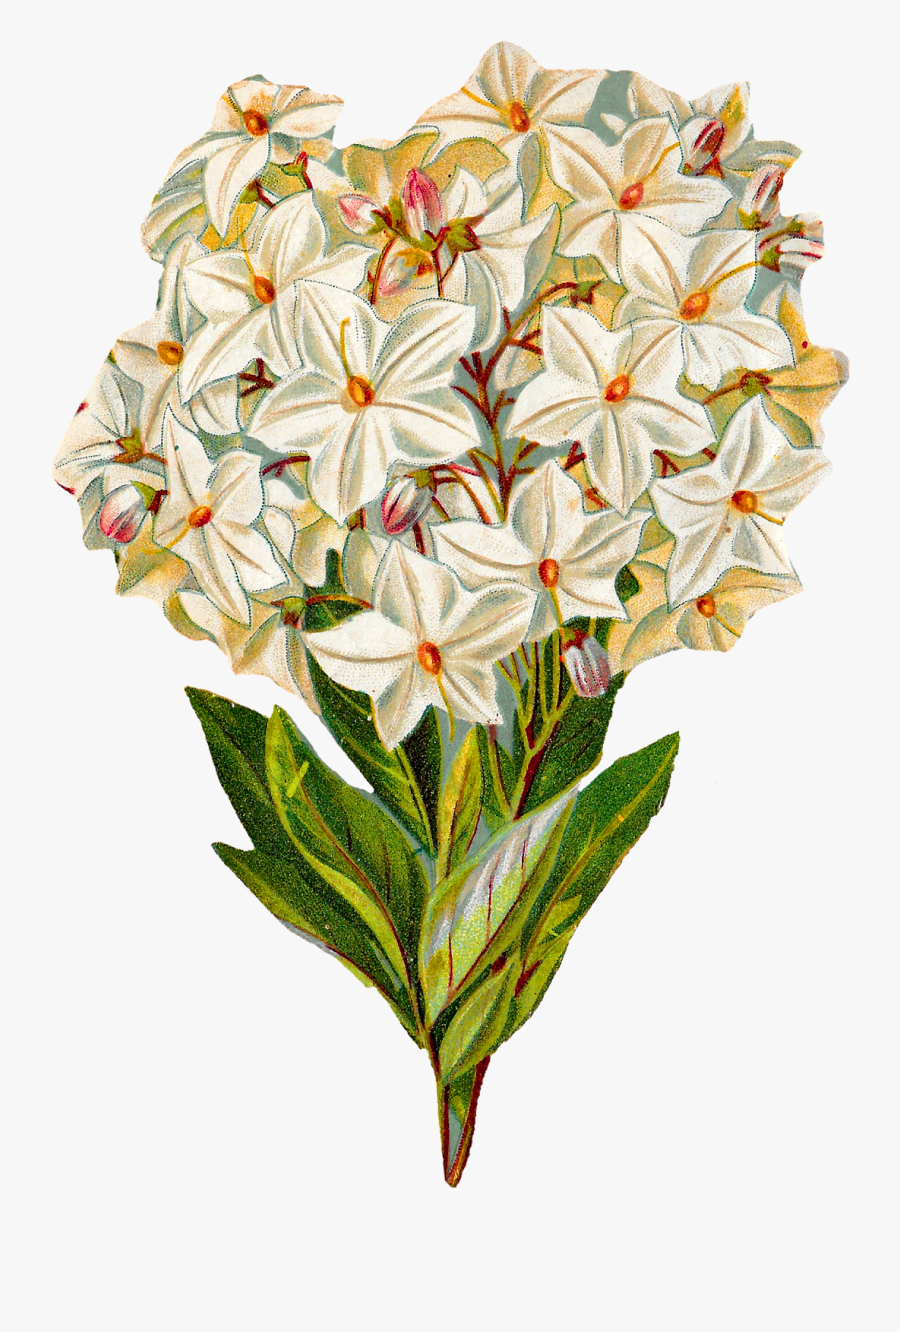 Antique Images Free Flower - Botanical Illustration Vintage Flowers Png, Transparent Clipart